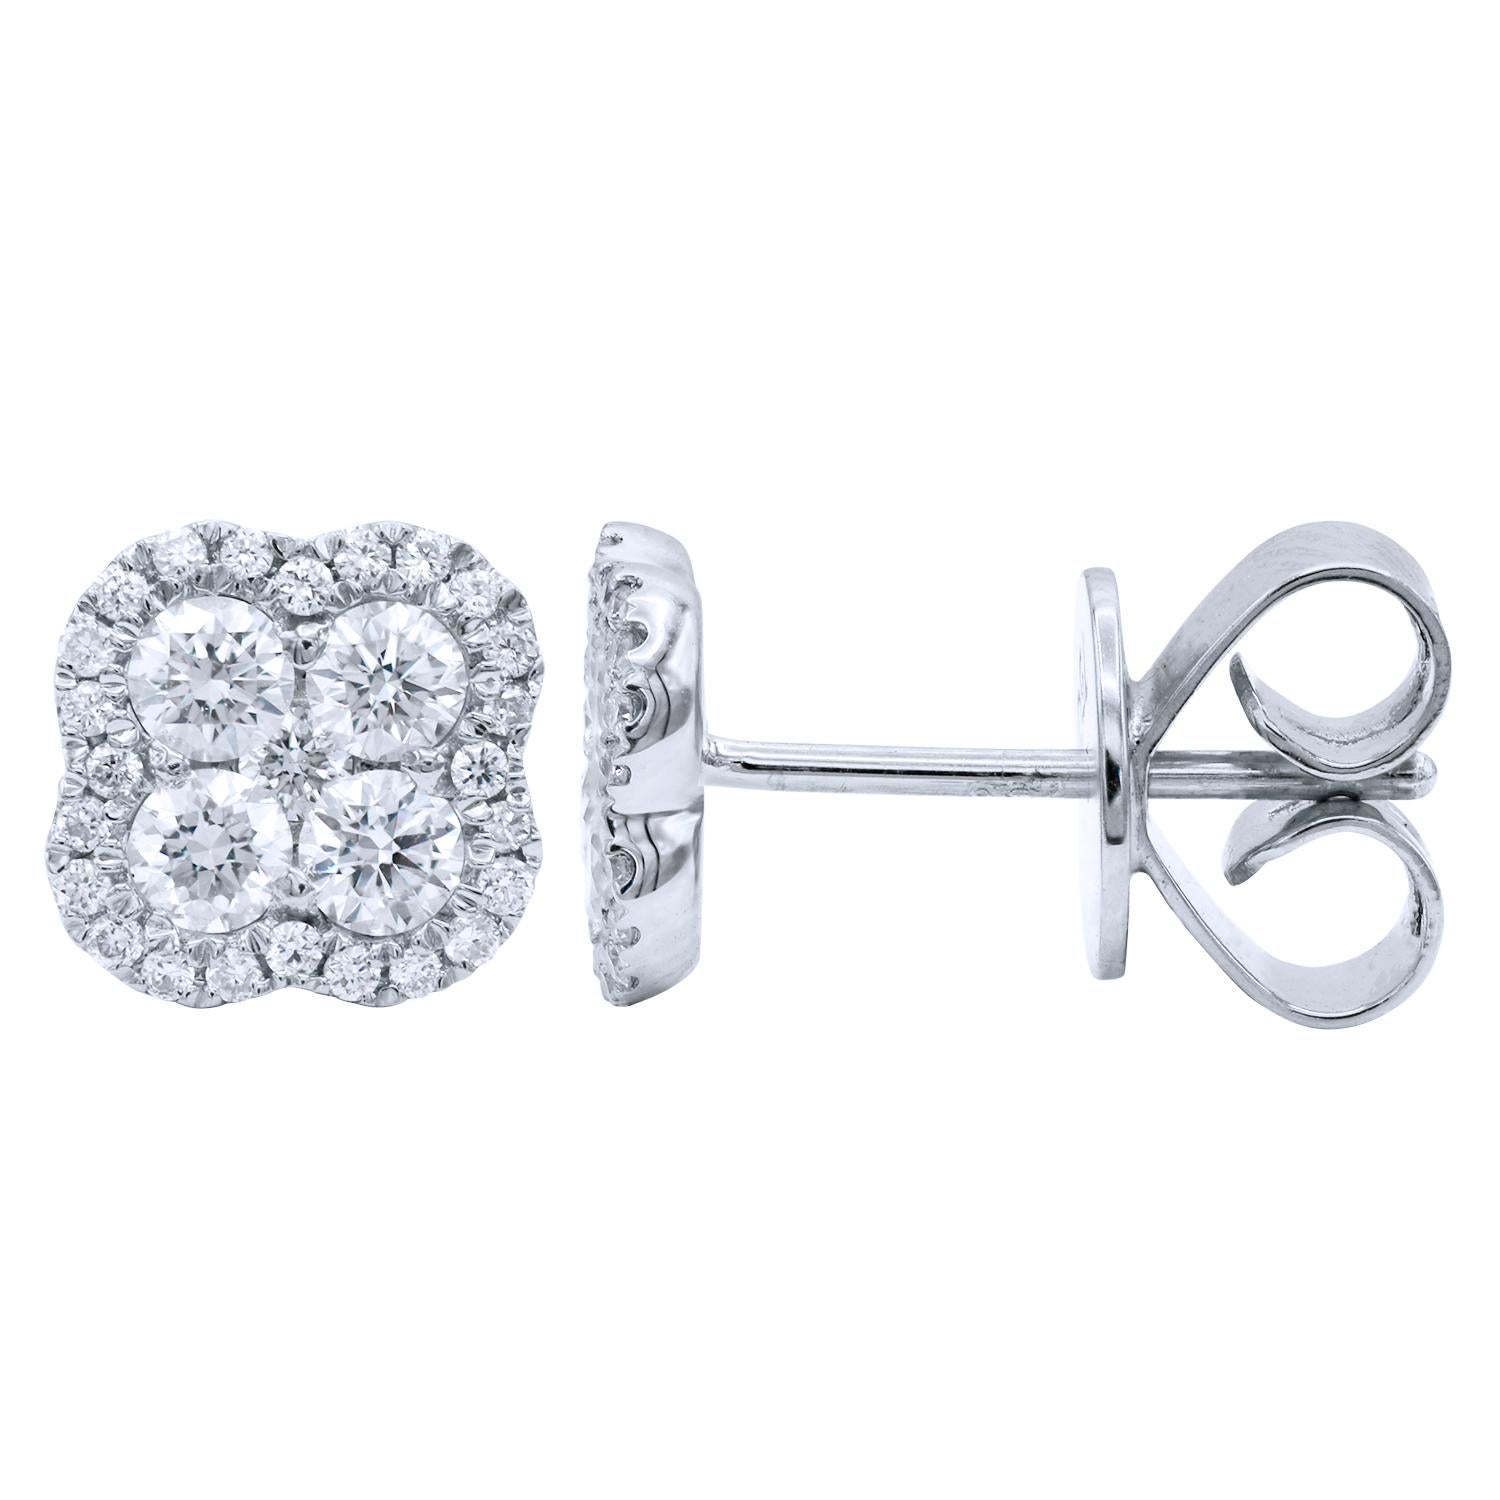 Diese wunderschönen Ohrringe funkeln und glänzen mit 58 runden Diamanten der Farbe G, VS2, von insgesamt 0,46 Karat. Sie enthalten 4 größere Diamanten, die von kleineren Diamanten umgeben sind und ein schönes Cluster bilden. Sie sind in 1,8 Gramm 18